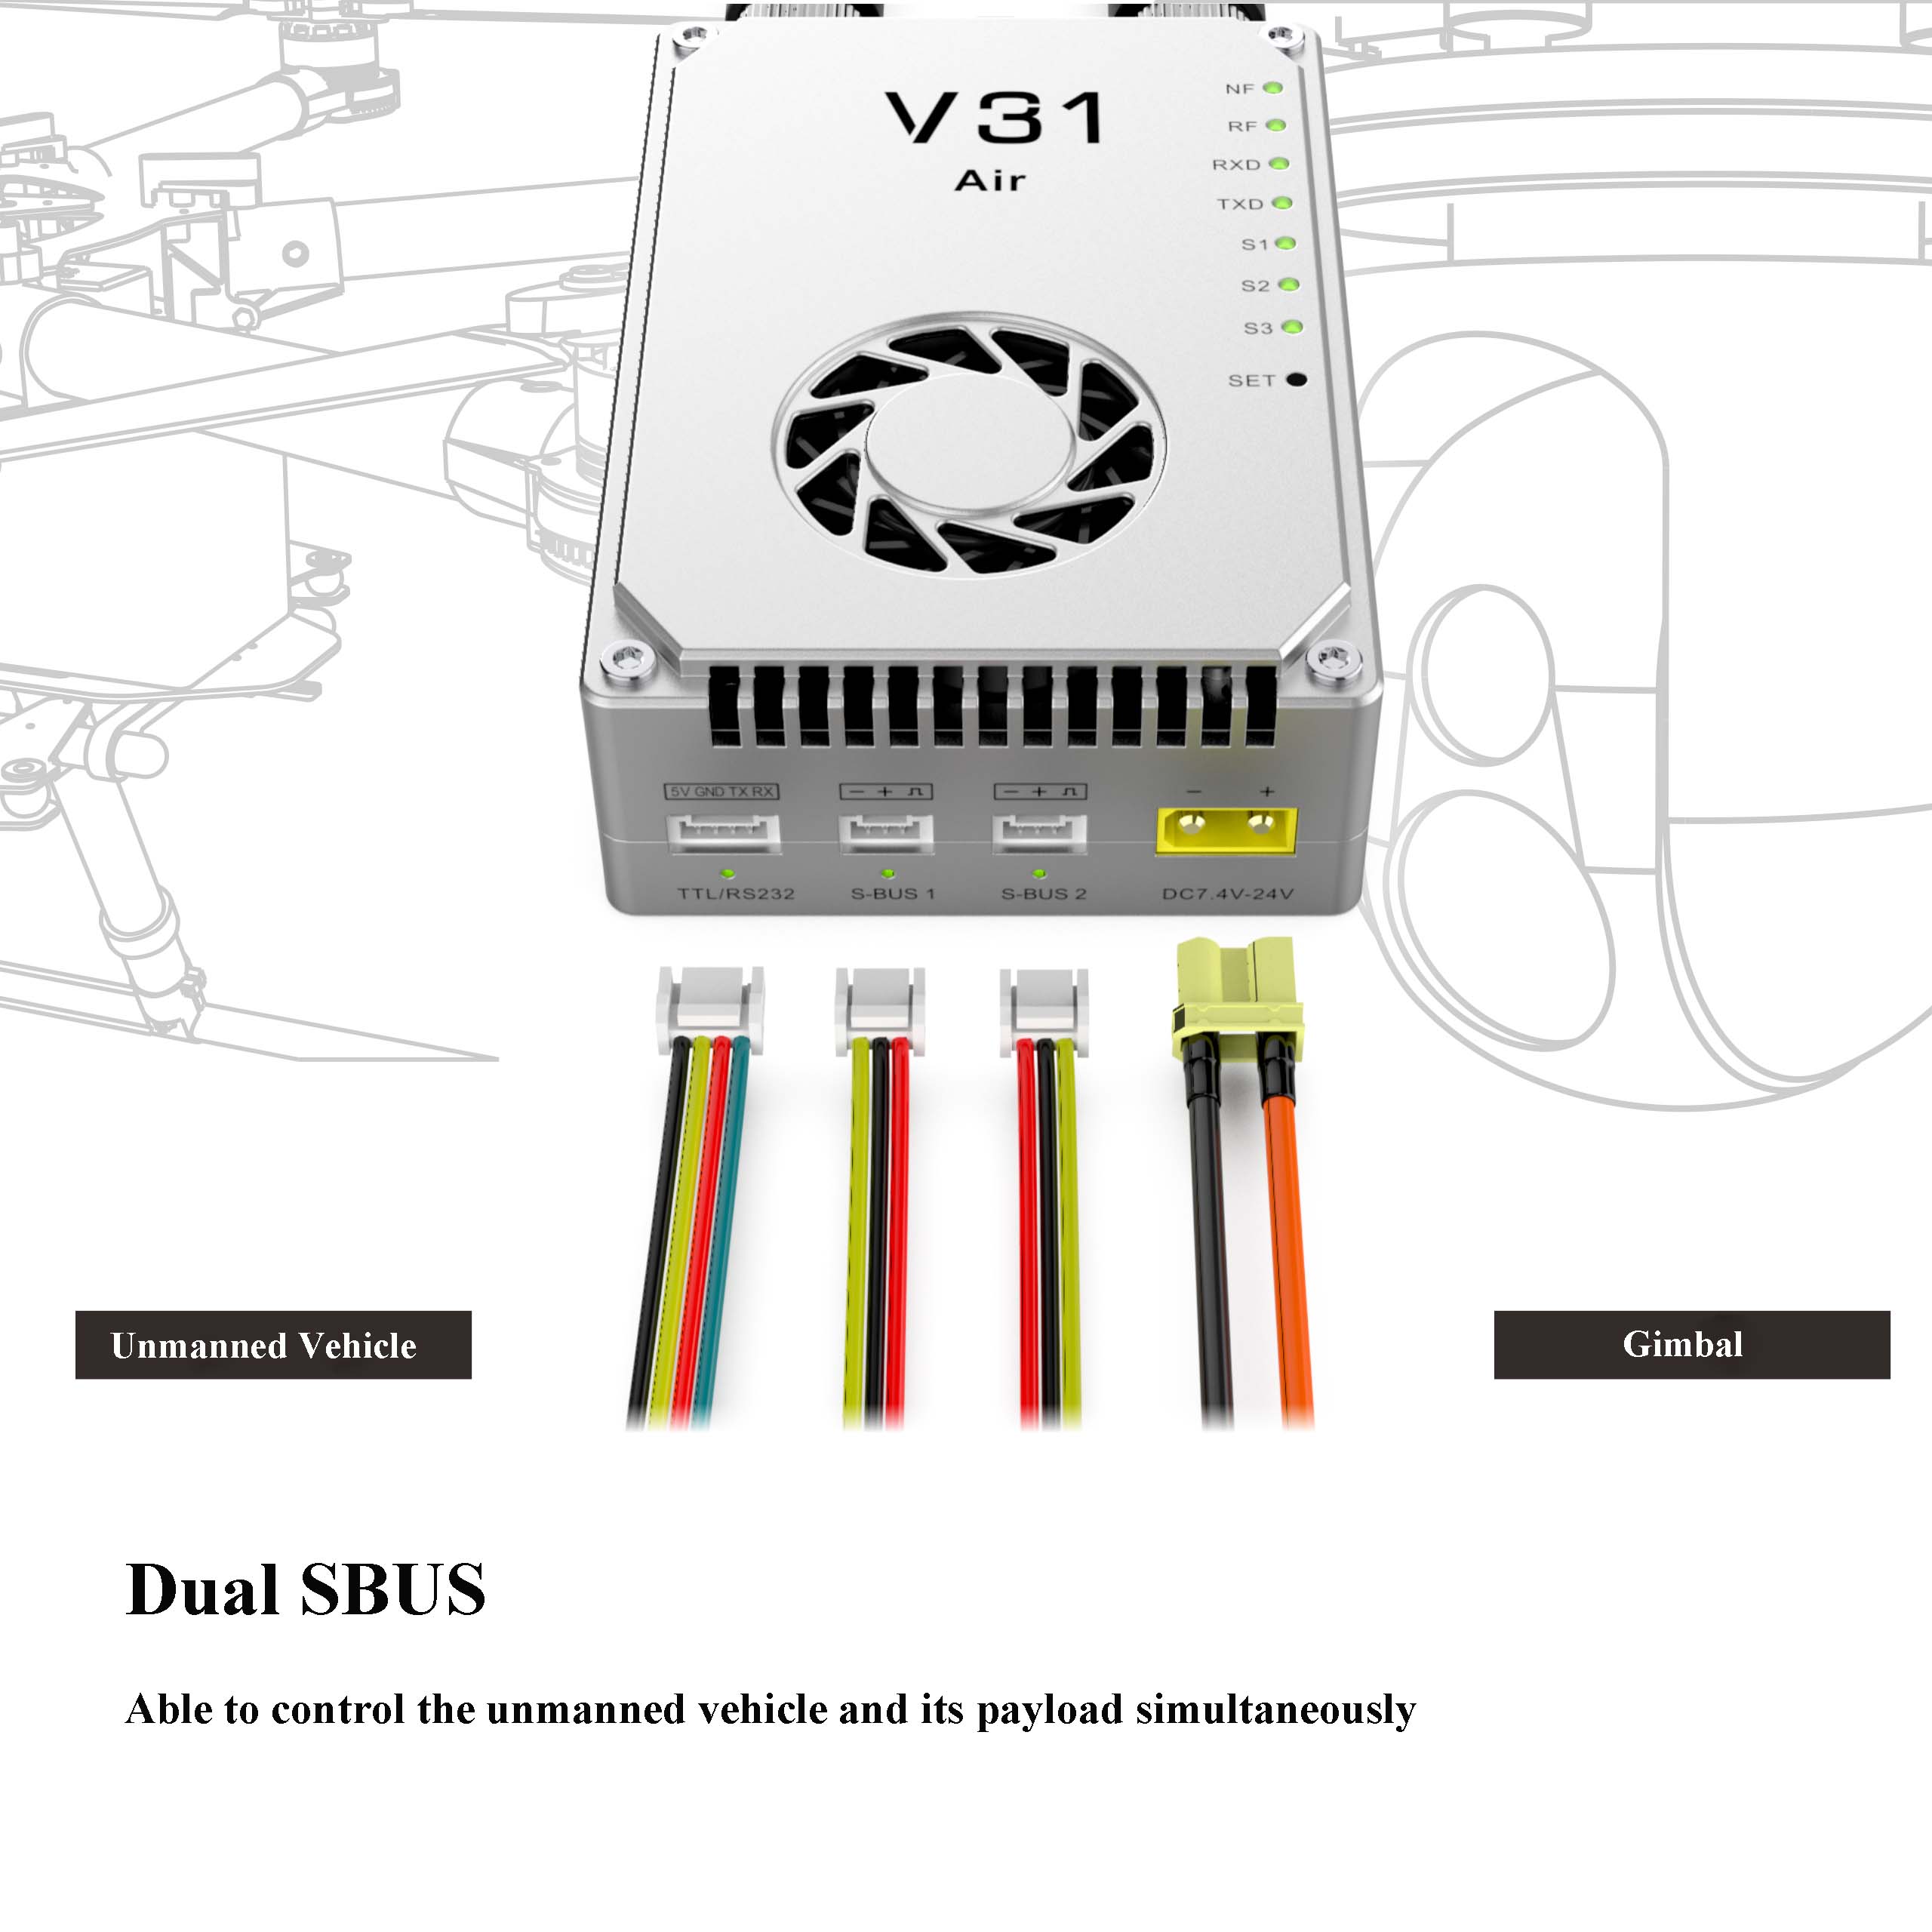 V31C Набір для зв'язку V31C : відео, телеметрія, управління - 5 км